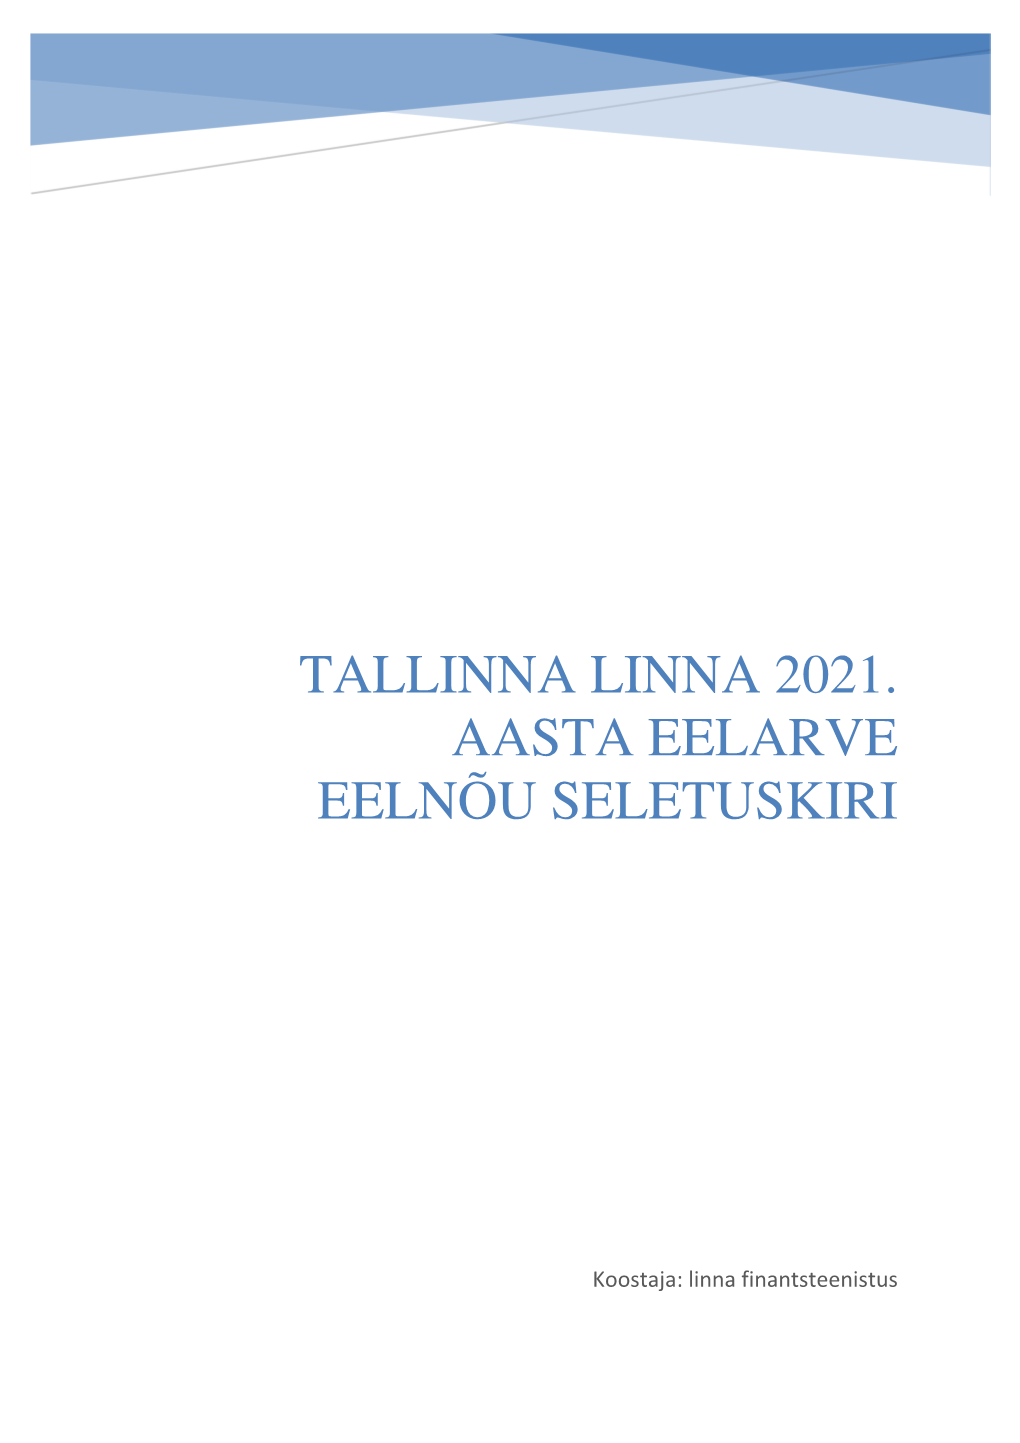 Tallinna Linna 2021. Aasta Eelarve Eelnõu Seletuskiri